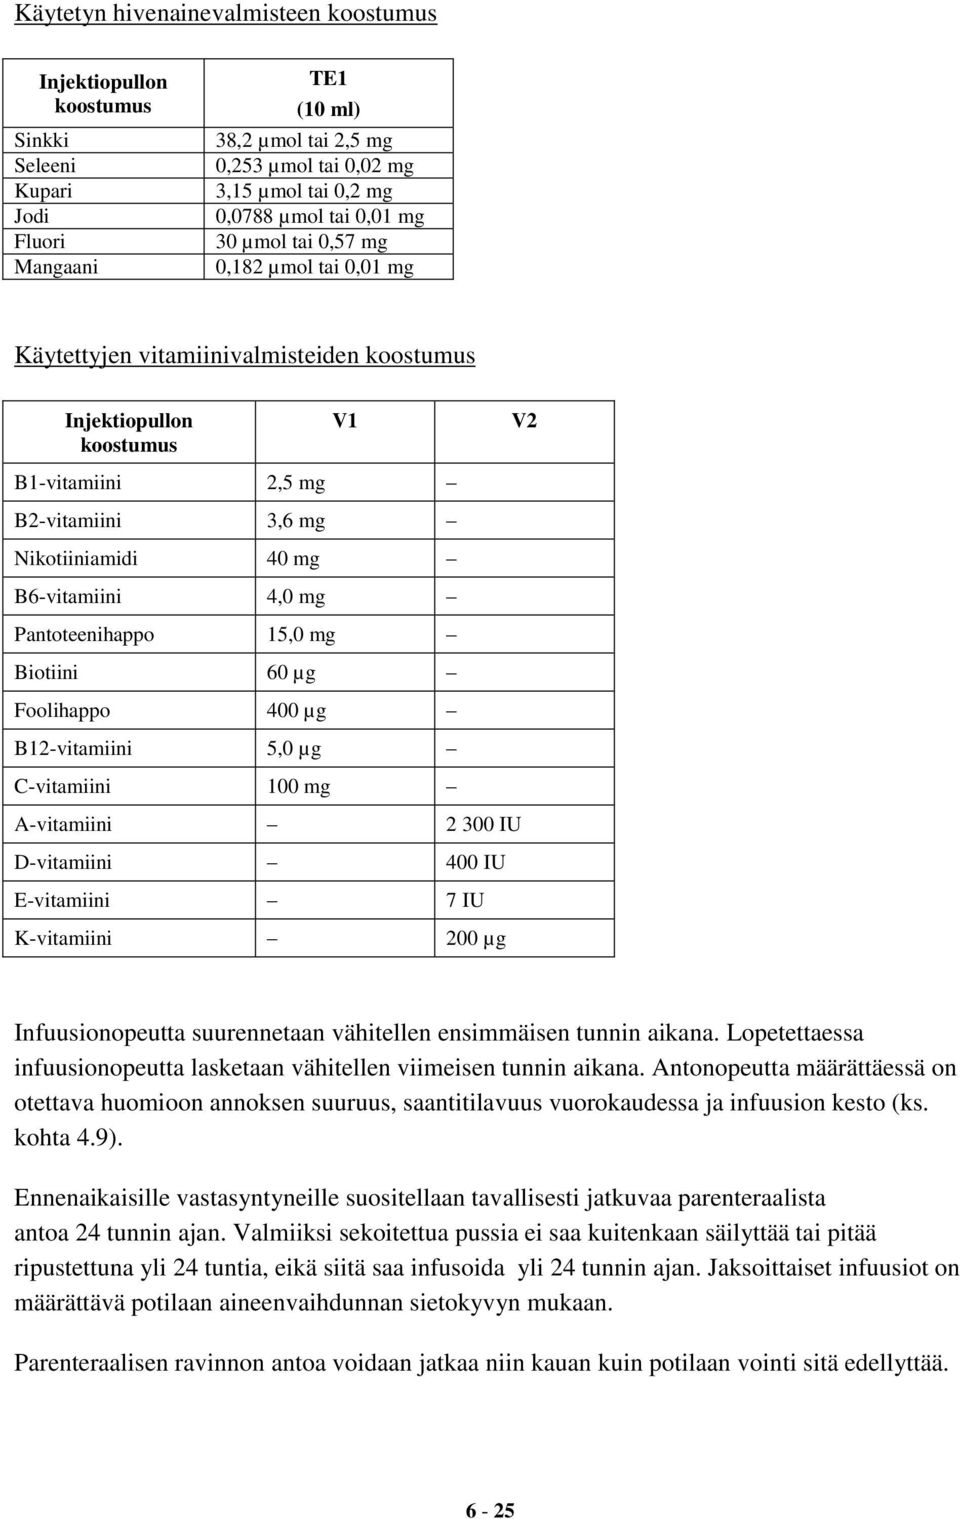 4,0 mg Pantoteenihappo 15,0 mg Biotiini 60 µg Foolihappo 400 µg B12-vitamiini 5,0 µg C-vitamiini 100 mg A-vitamiini 2 300 IU D-vitamiini 400 IU E-vitamiini 7 IU K-vitamiini 200 µg V2 Infuusionopeutta